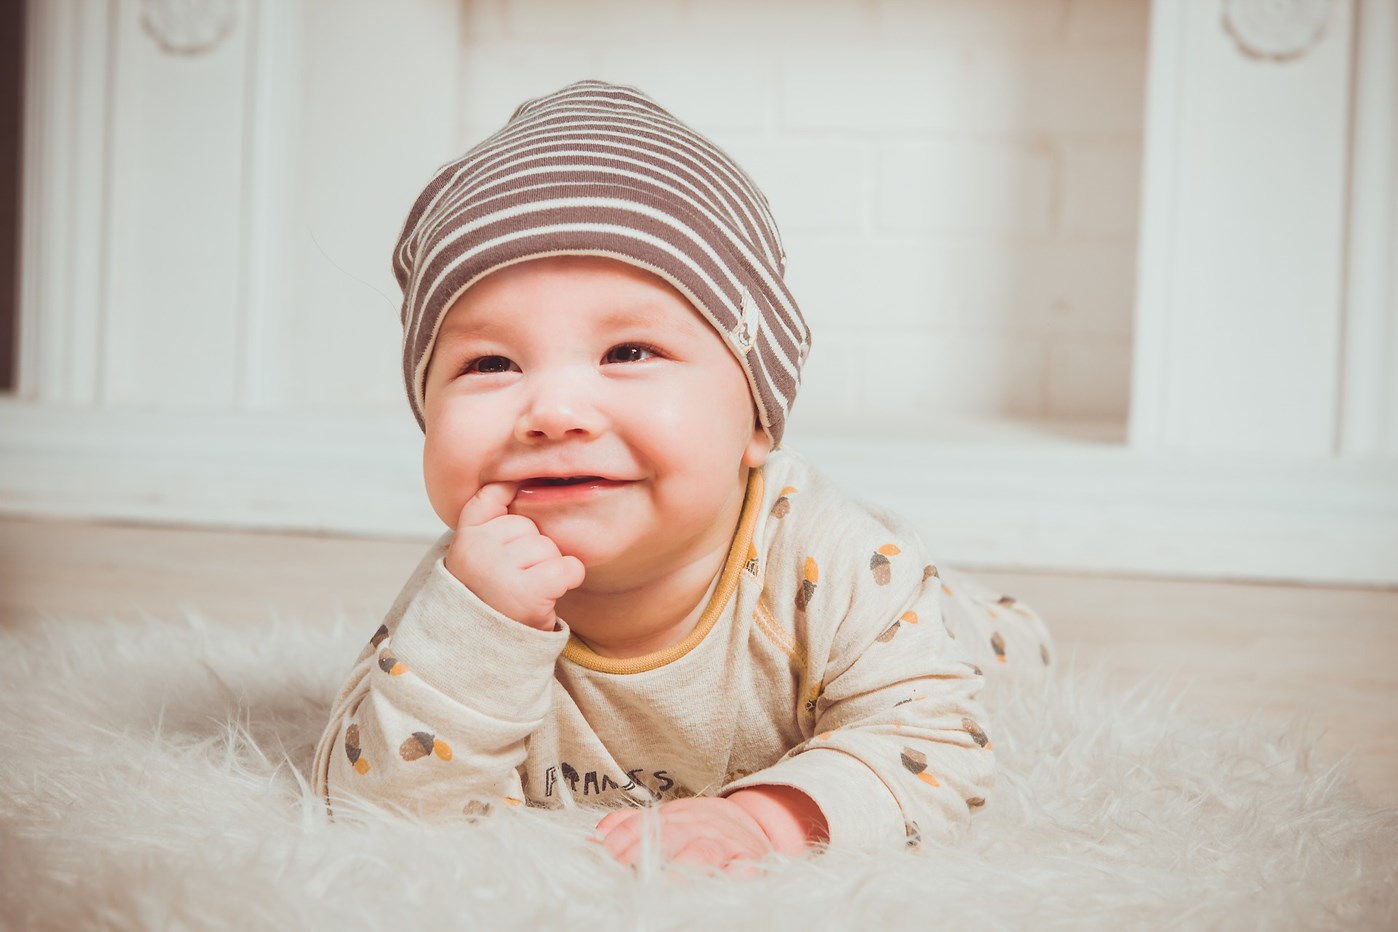 Seraph Aarzelen Wafel Baby fotoboek maken | 11 tips voor een mooi album | Tipsfotoalbummaken